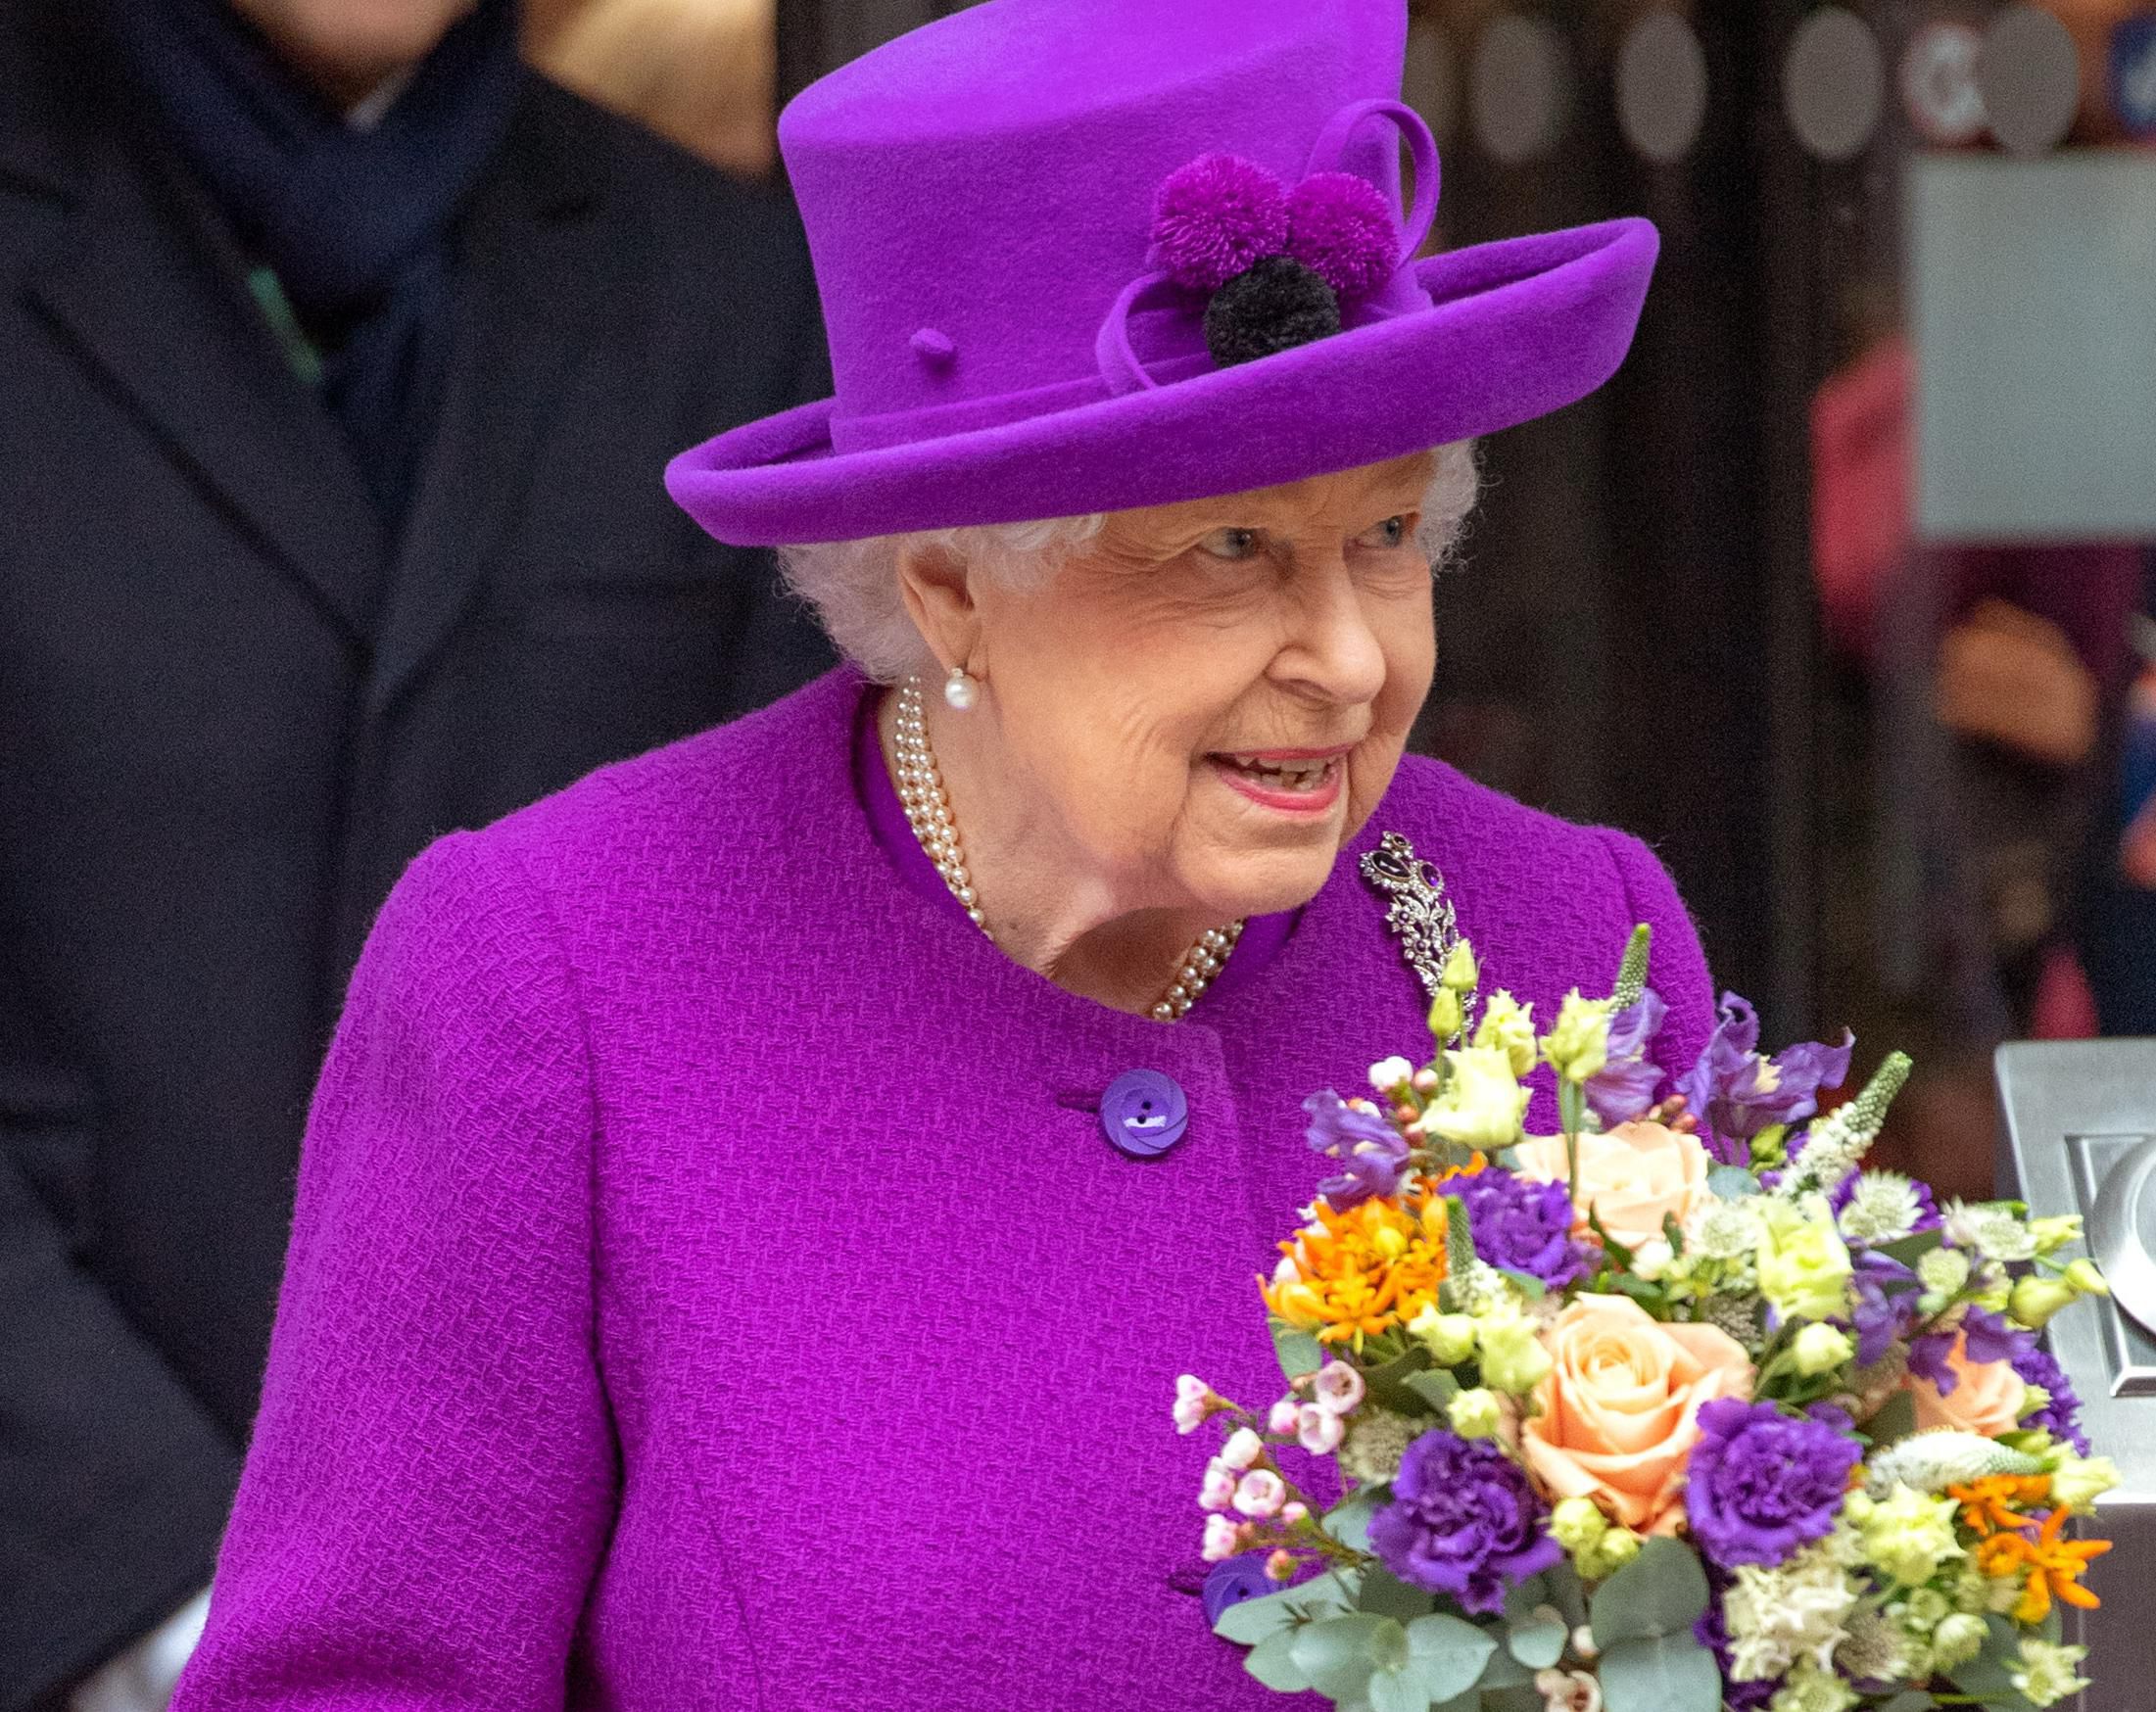 Kraljica Elizabeta II. danas slavi 94. rođendan: Otkazana tradicionalna proslava, no prisjetili smo se njezinih outfita